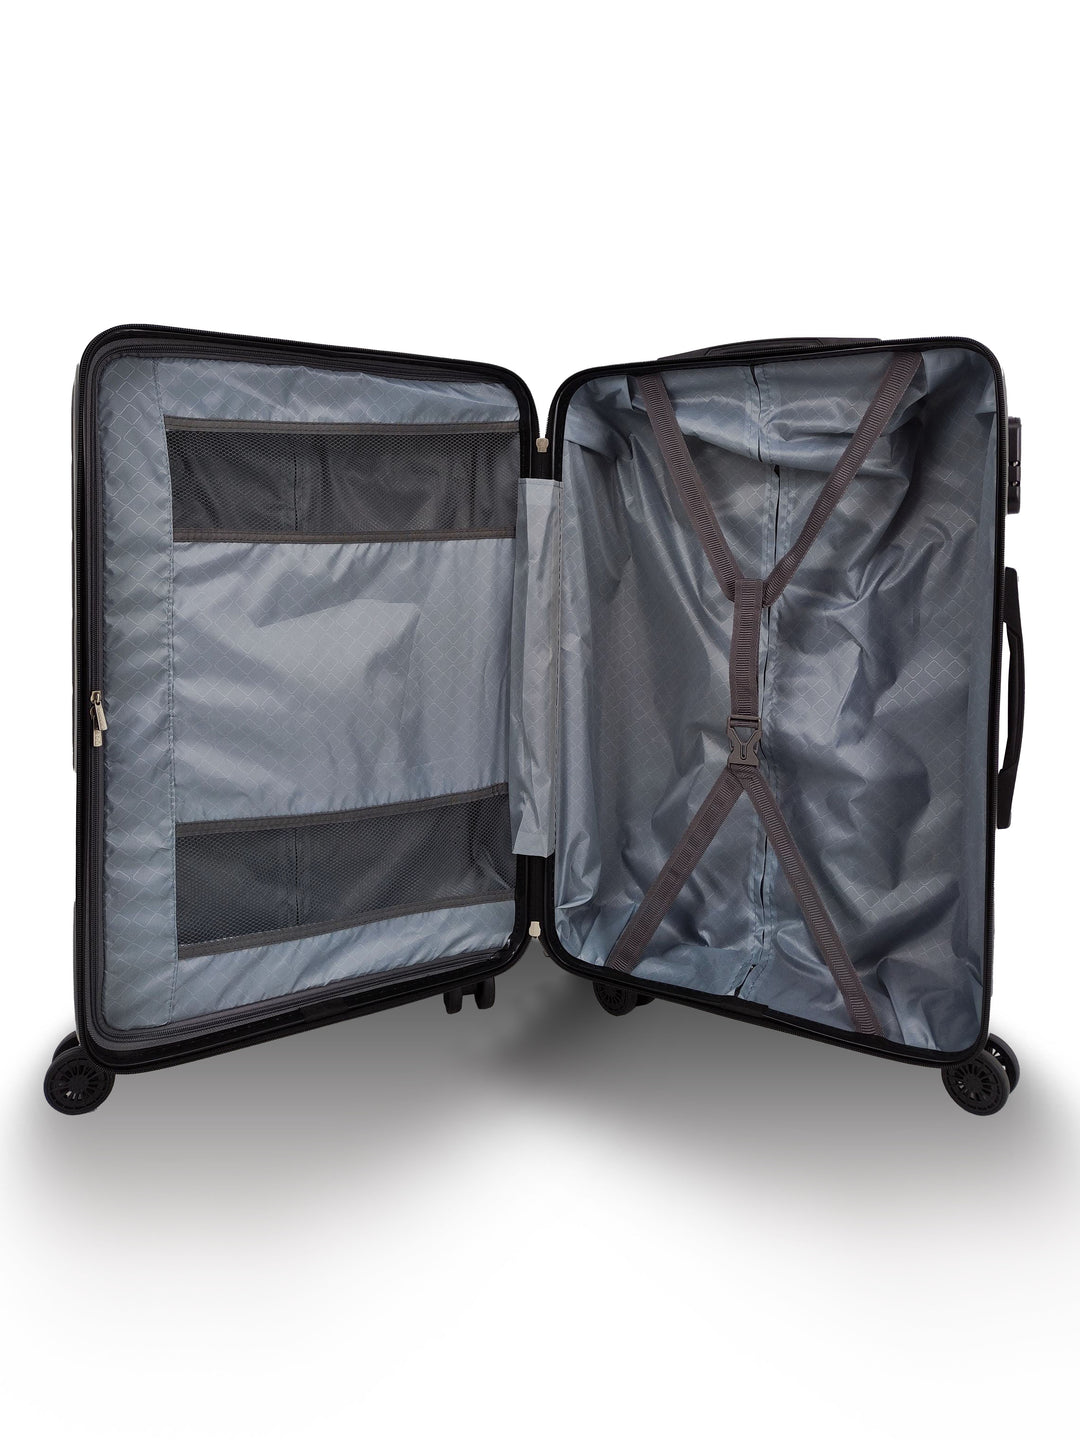 Qubed Squared 67cm 4-Wheel Suitcase